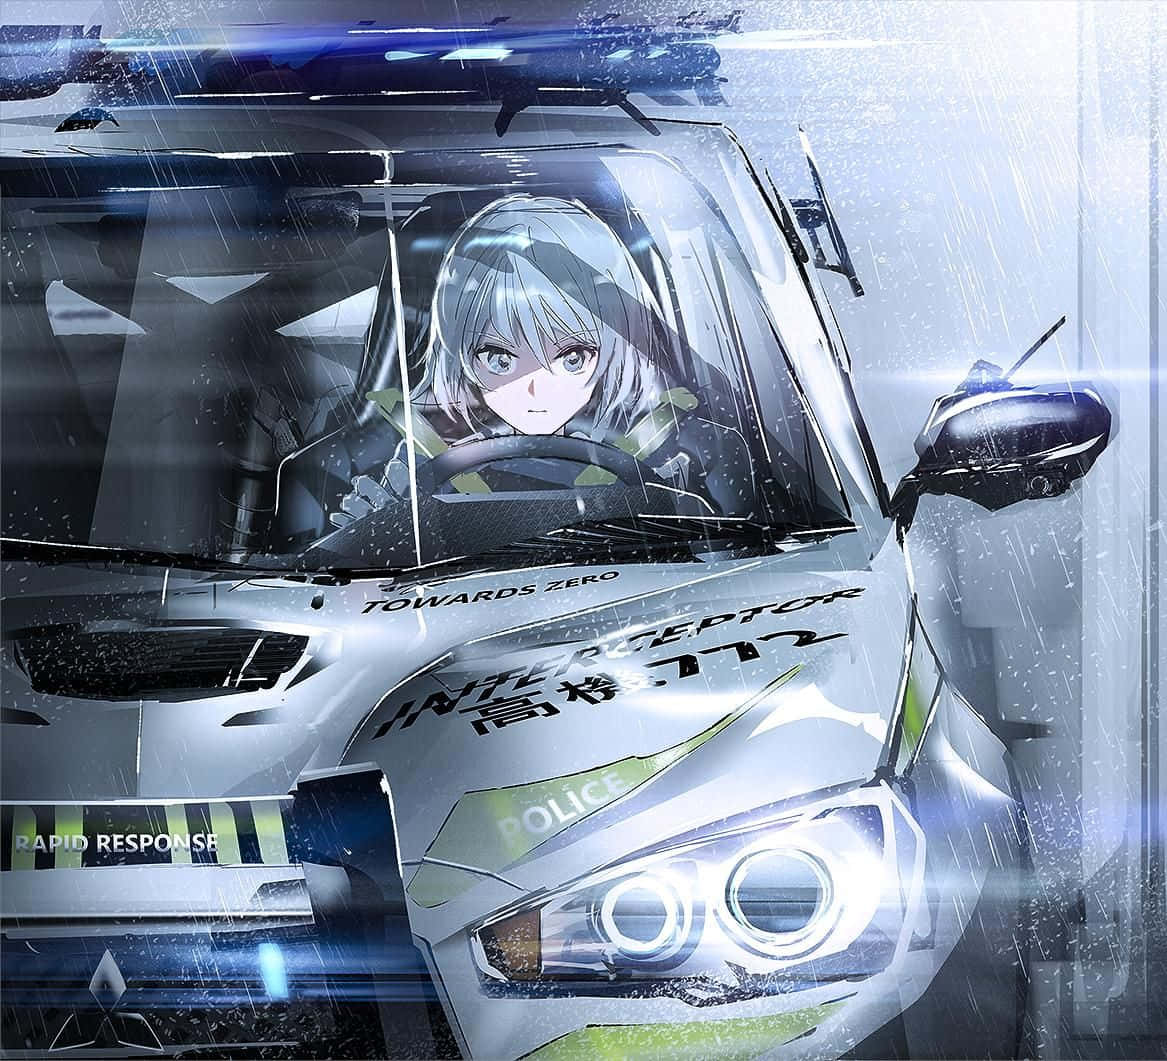 Best of Anime girl in police car